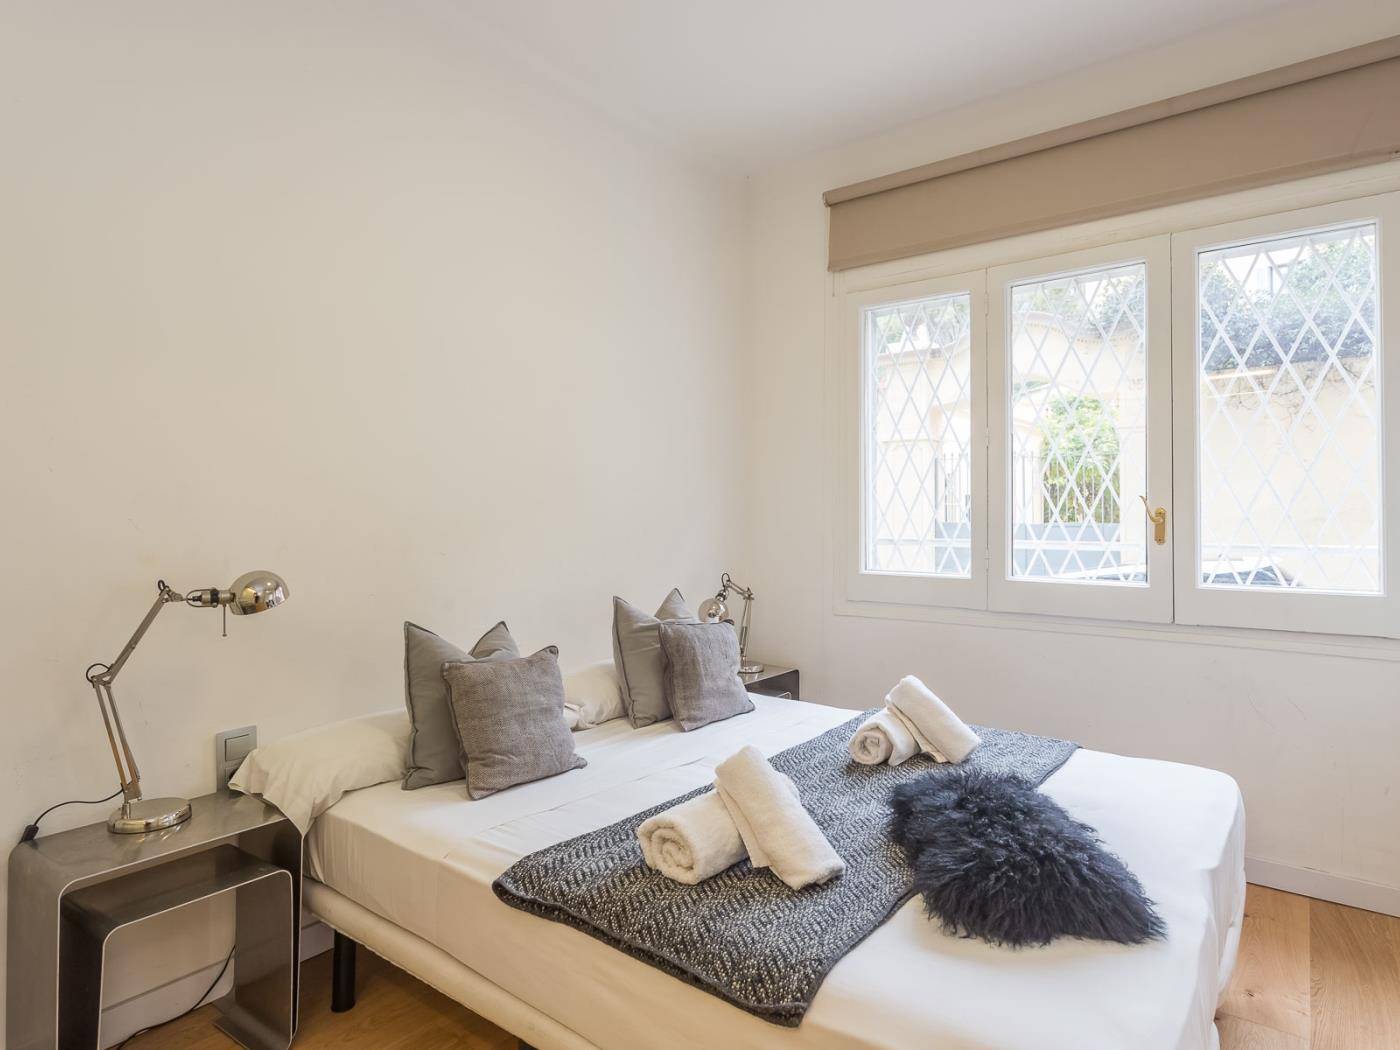 Nuovissimo appartamento con 2 camere da letto per affitti temporanei in zona upt - My Space Barcelona Appartamenti